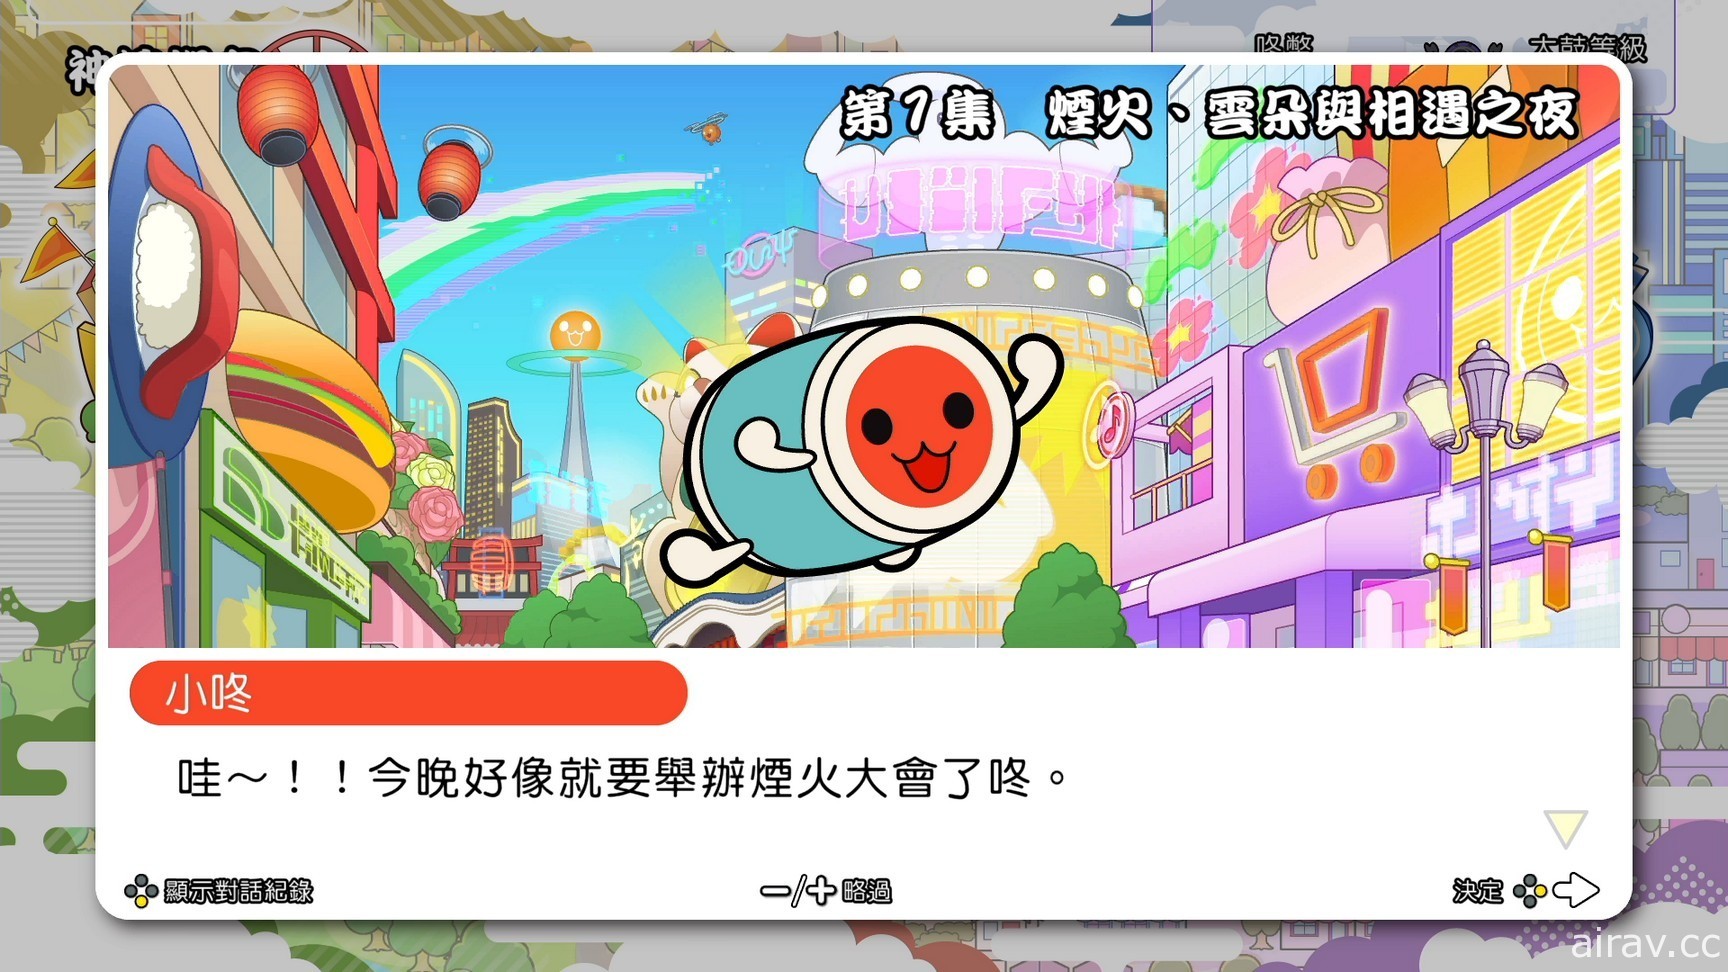 《太鼓之达人 咚咚雷音祭》公开中文版限定特典！同步揭晓全新游戏情报